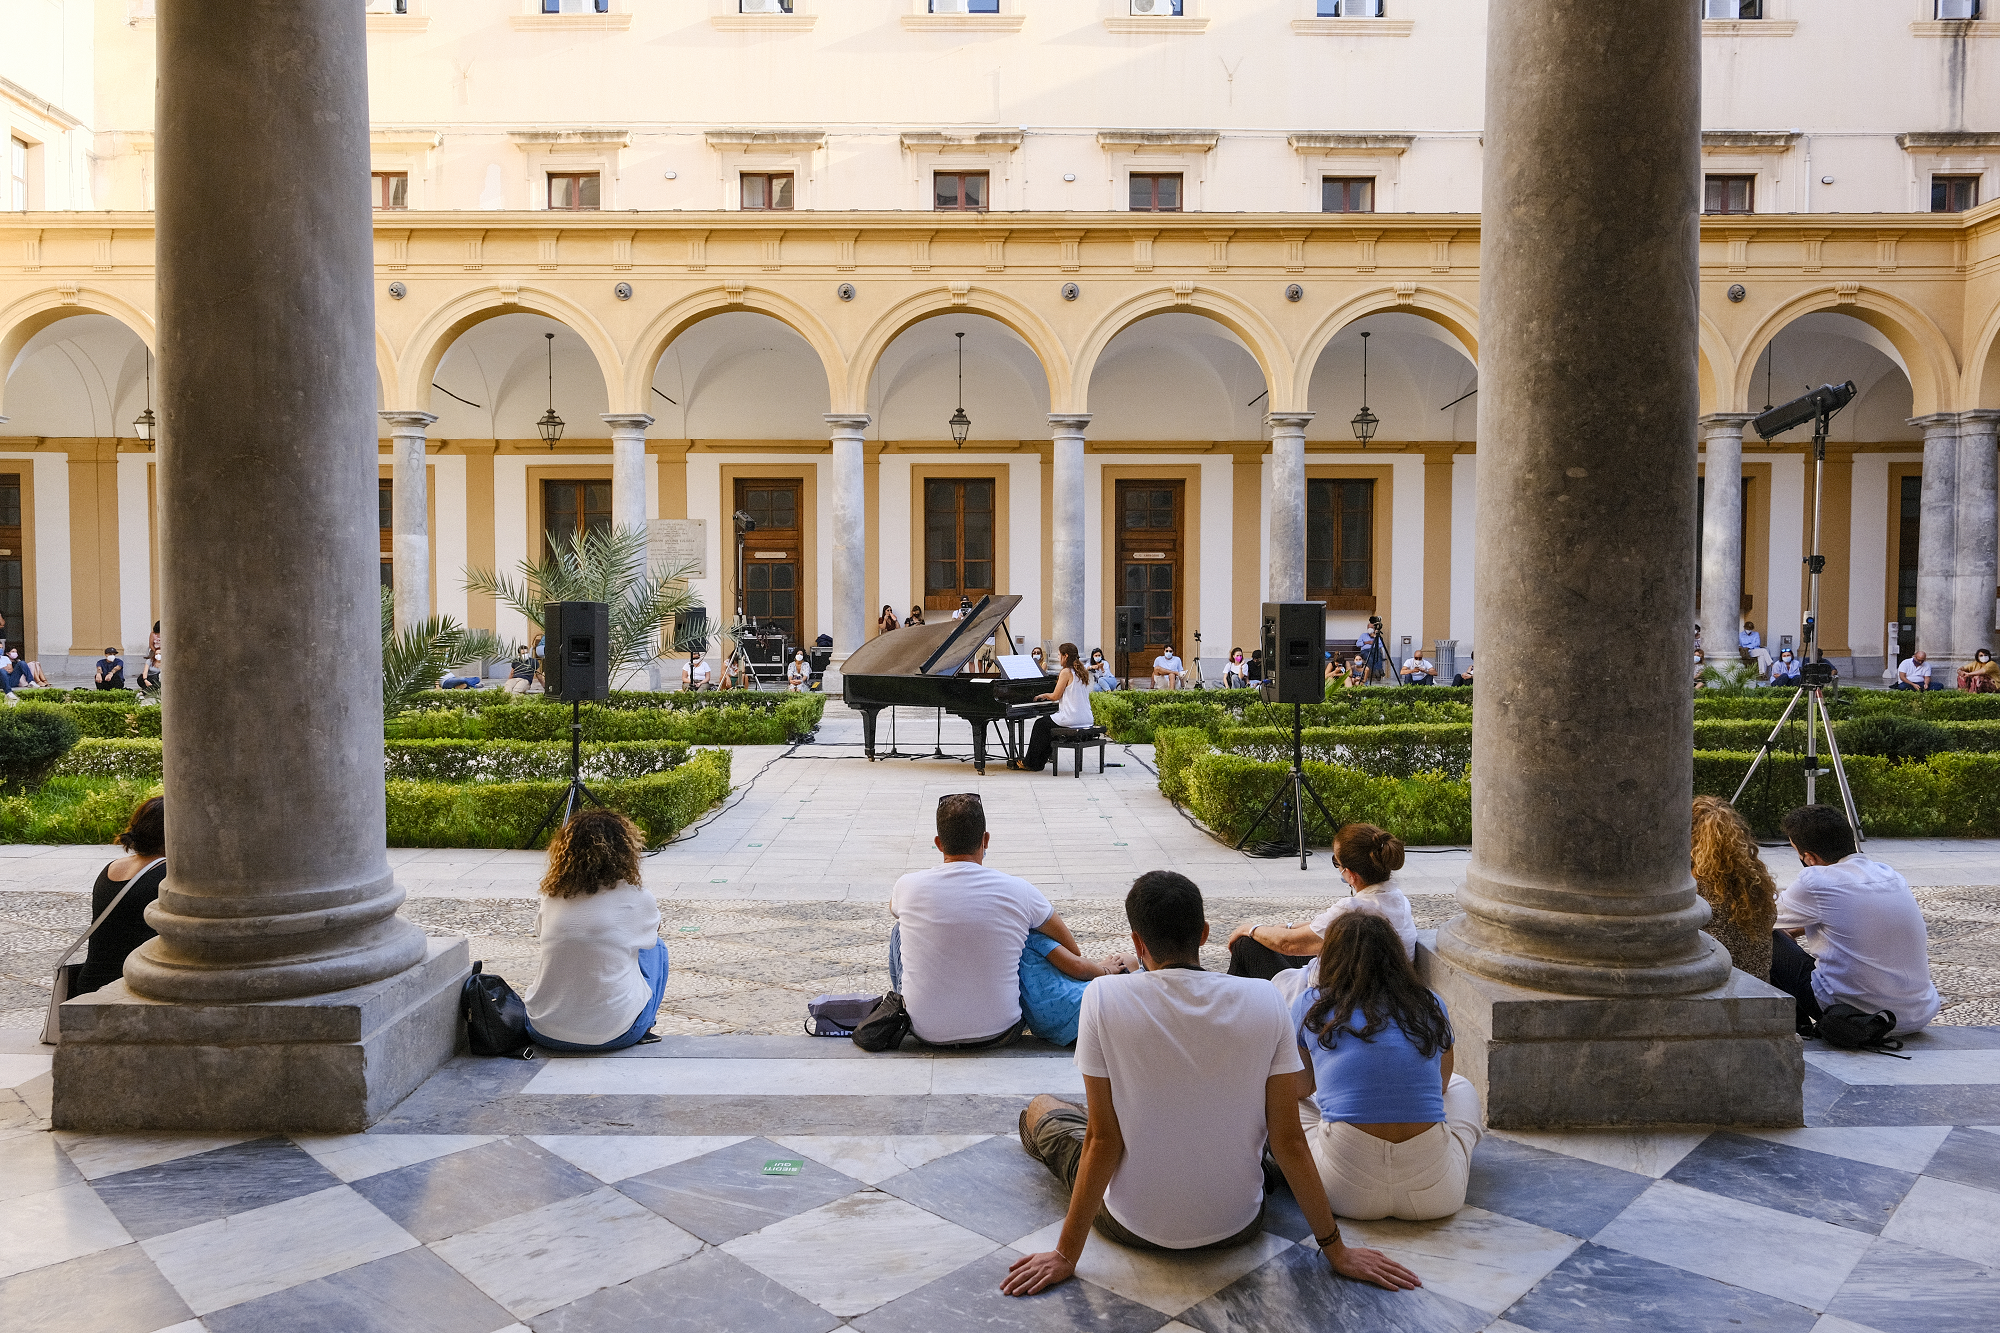 Piano City Palermo – Università degli Studi